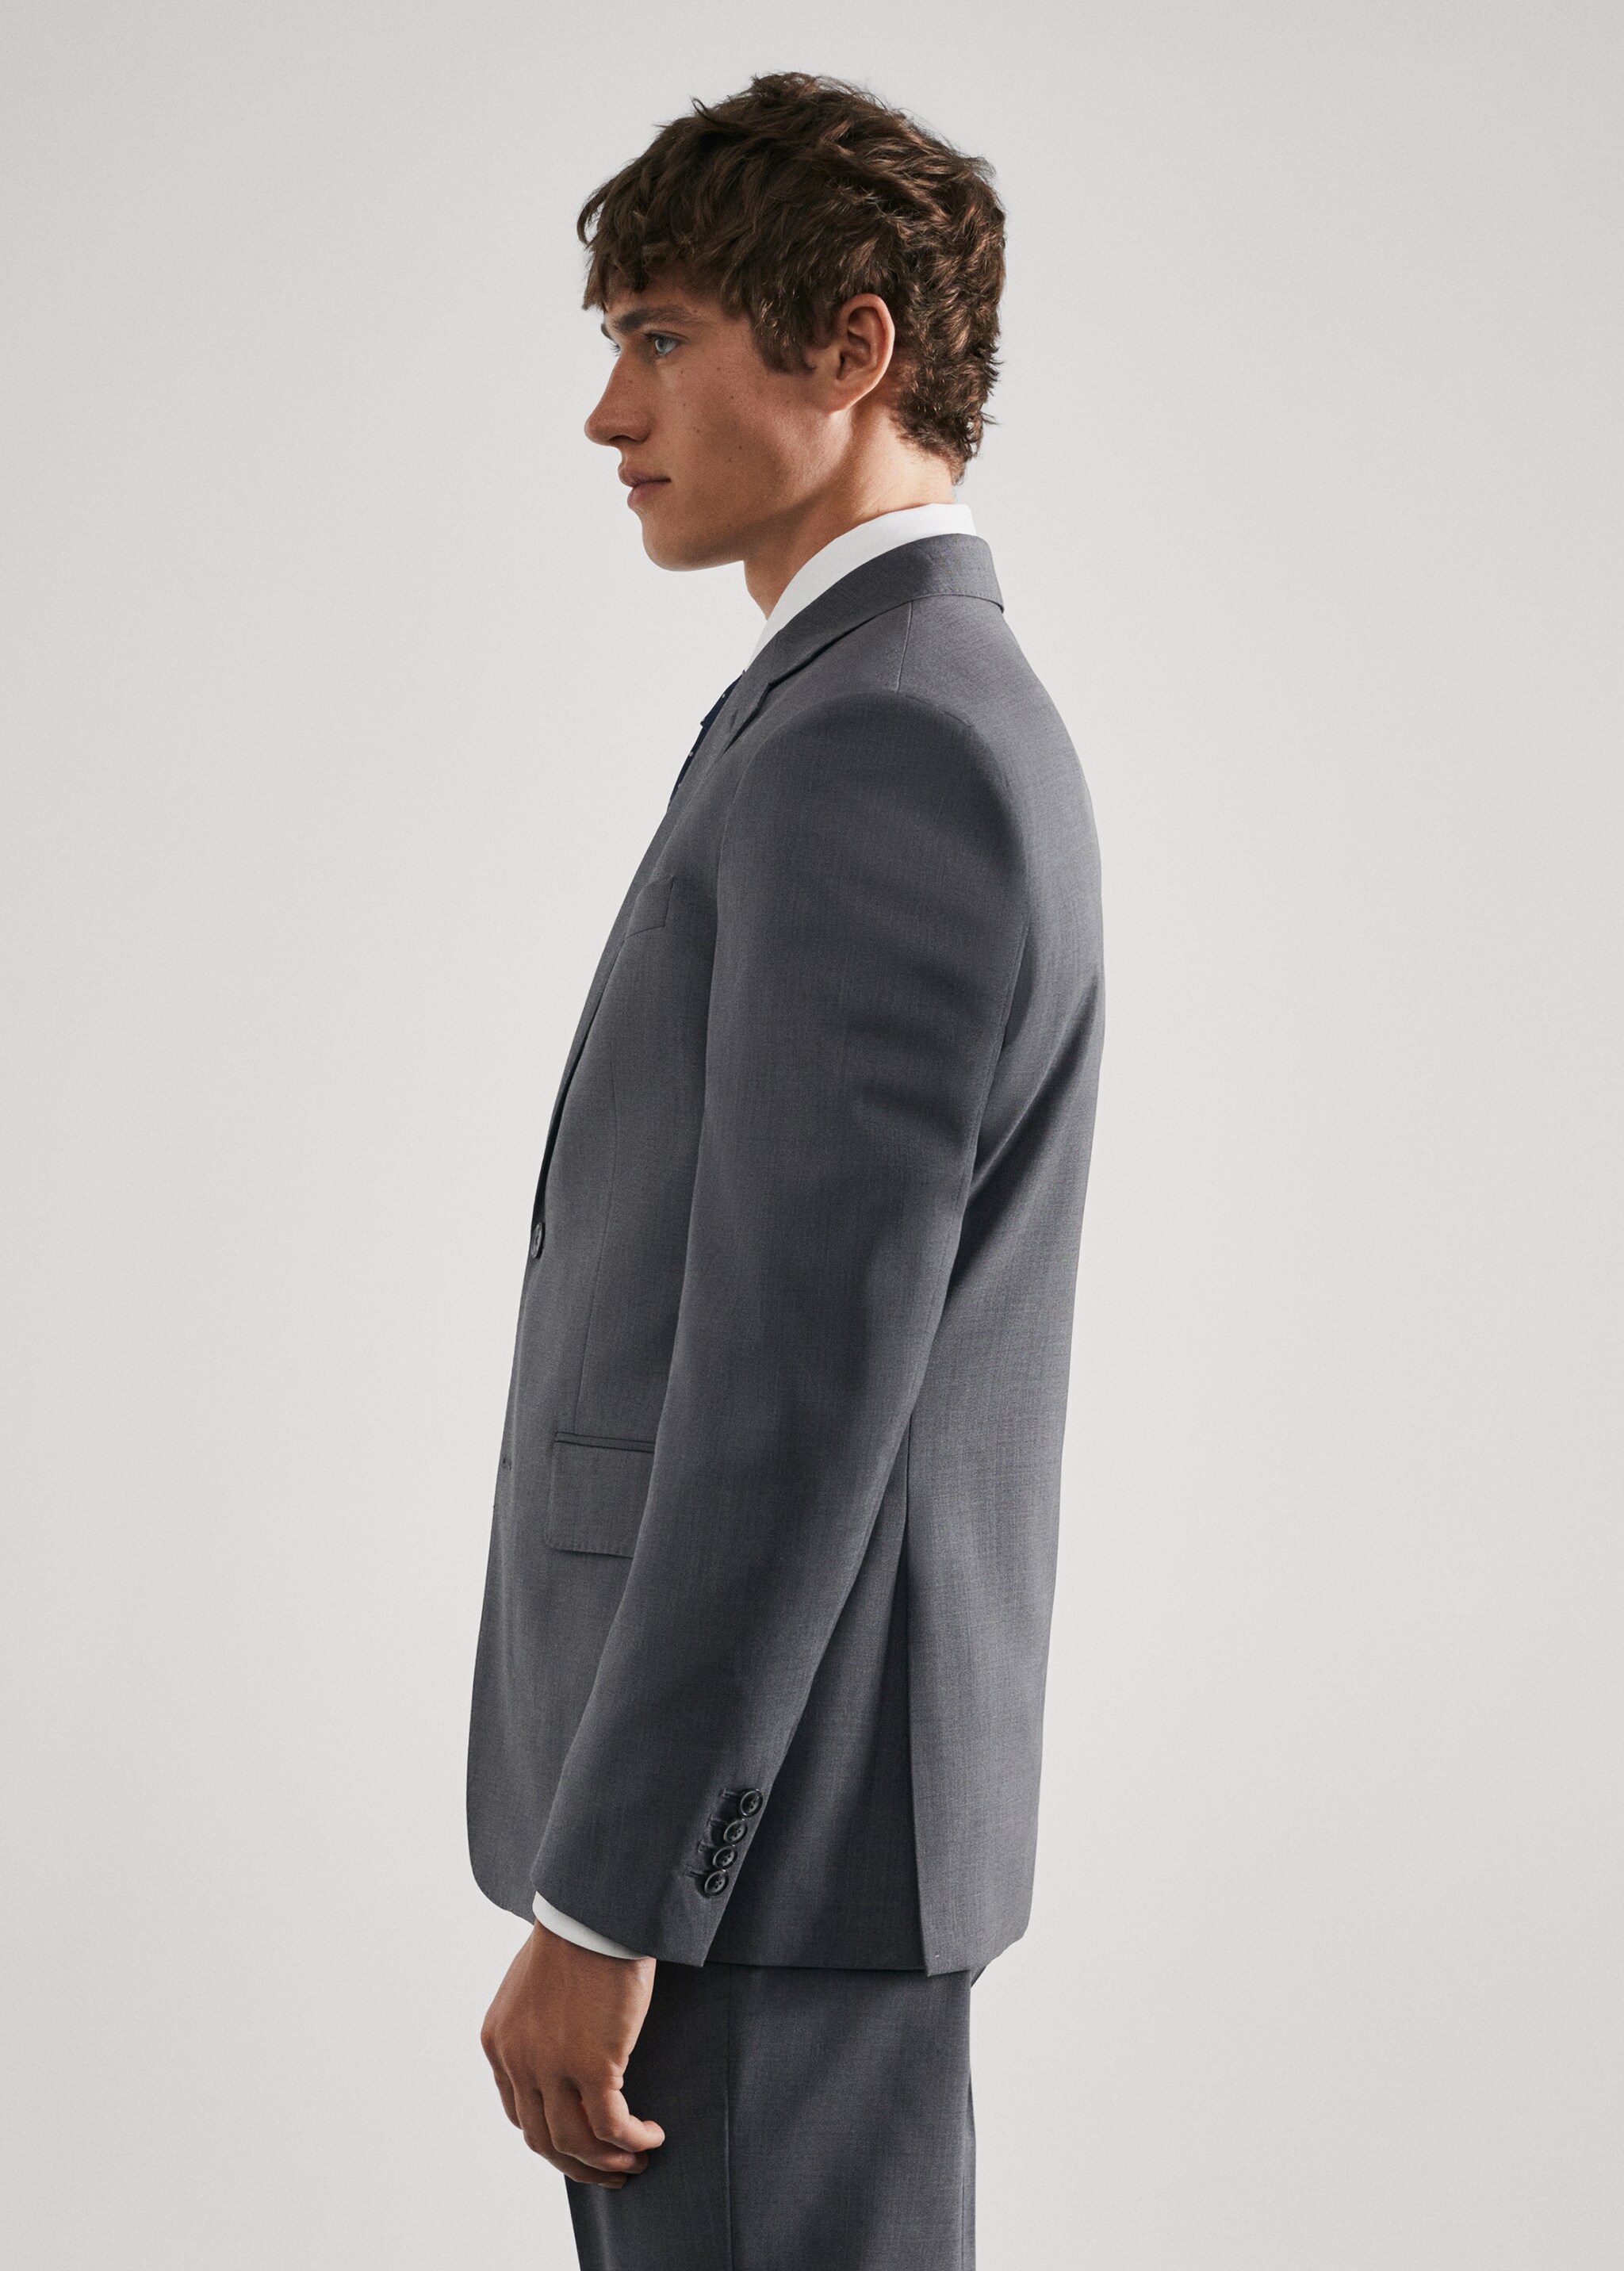 Slim fit virgin wool suit blazer - Details of the article 2